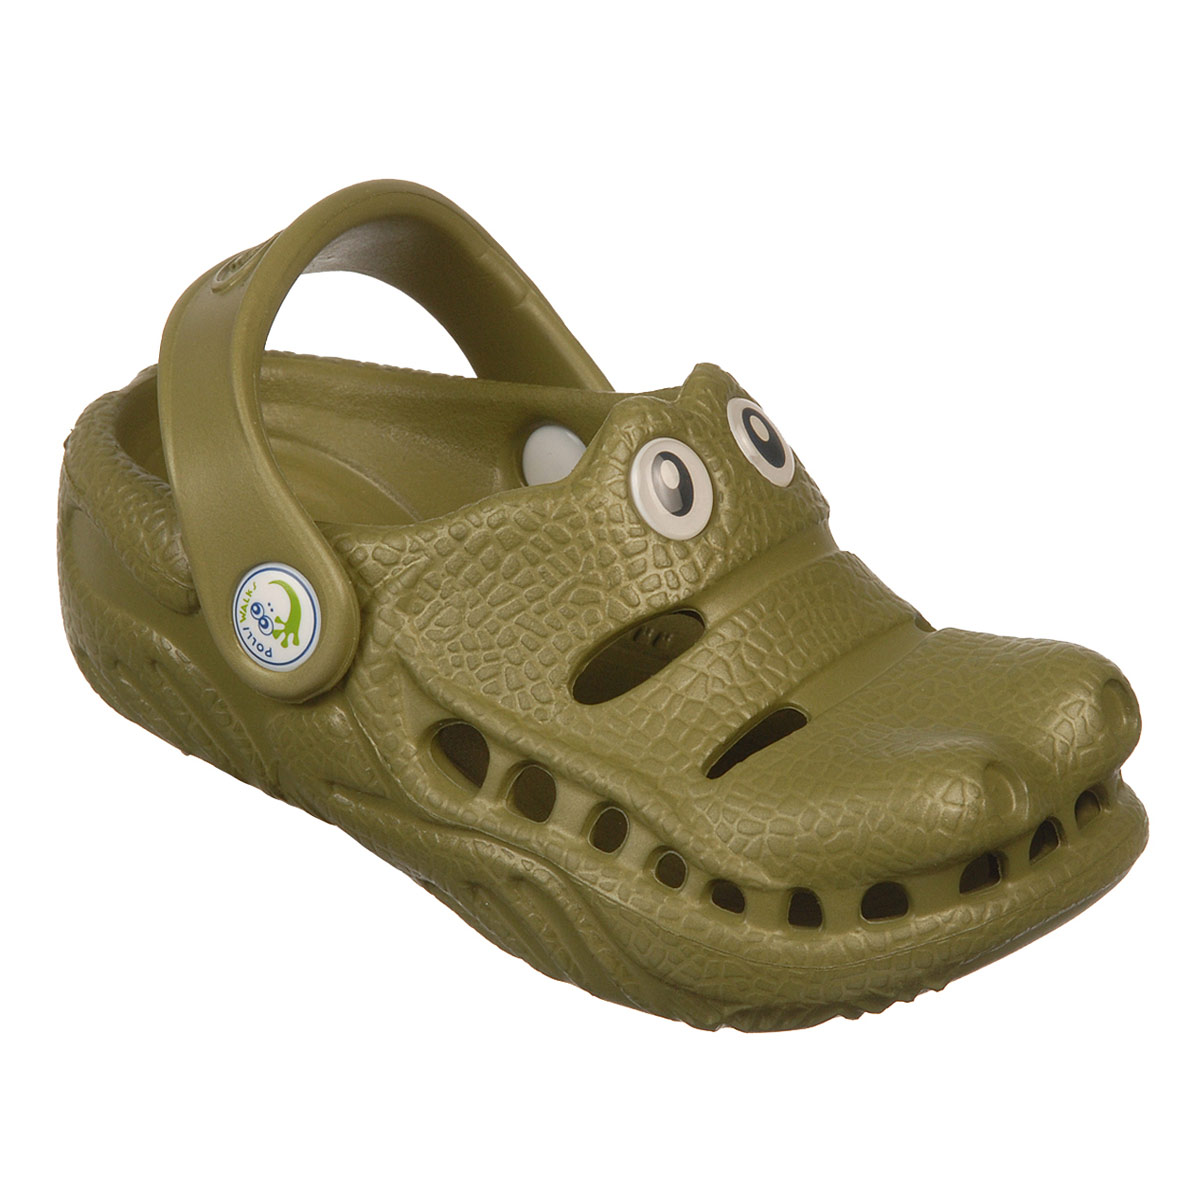 Polliwalks : Toddler shoes Gator ?Green # 11